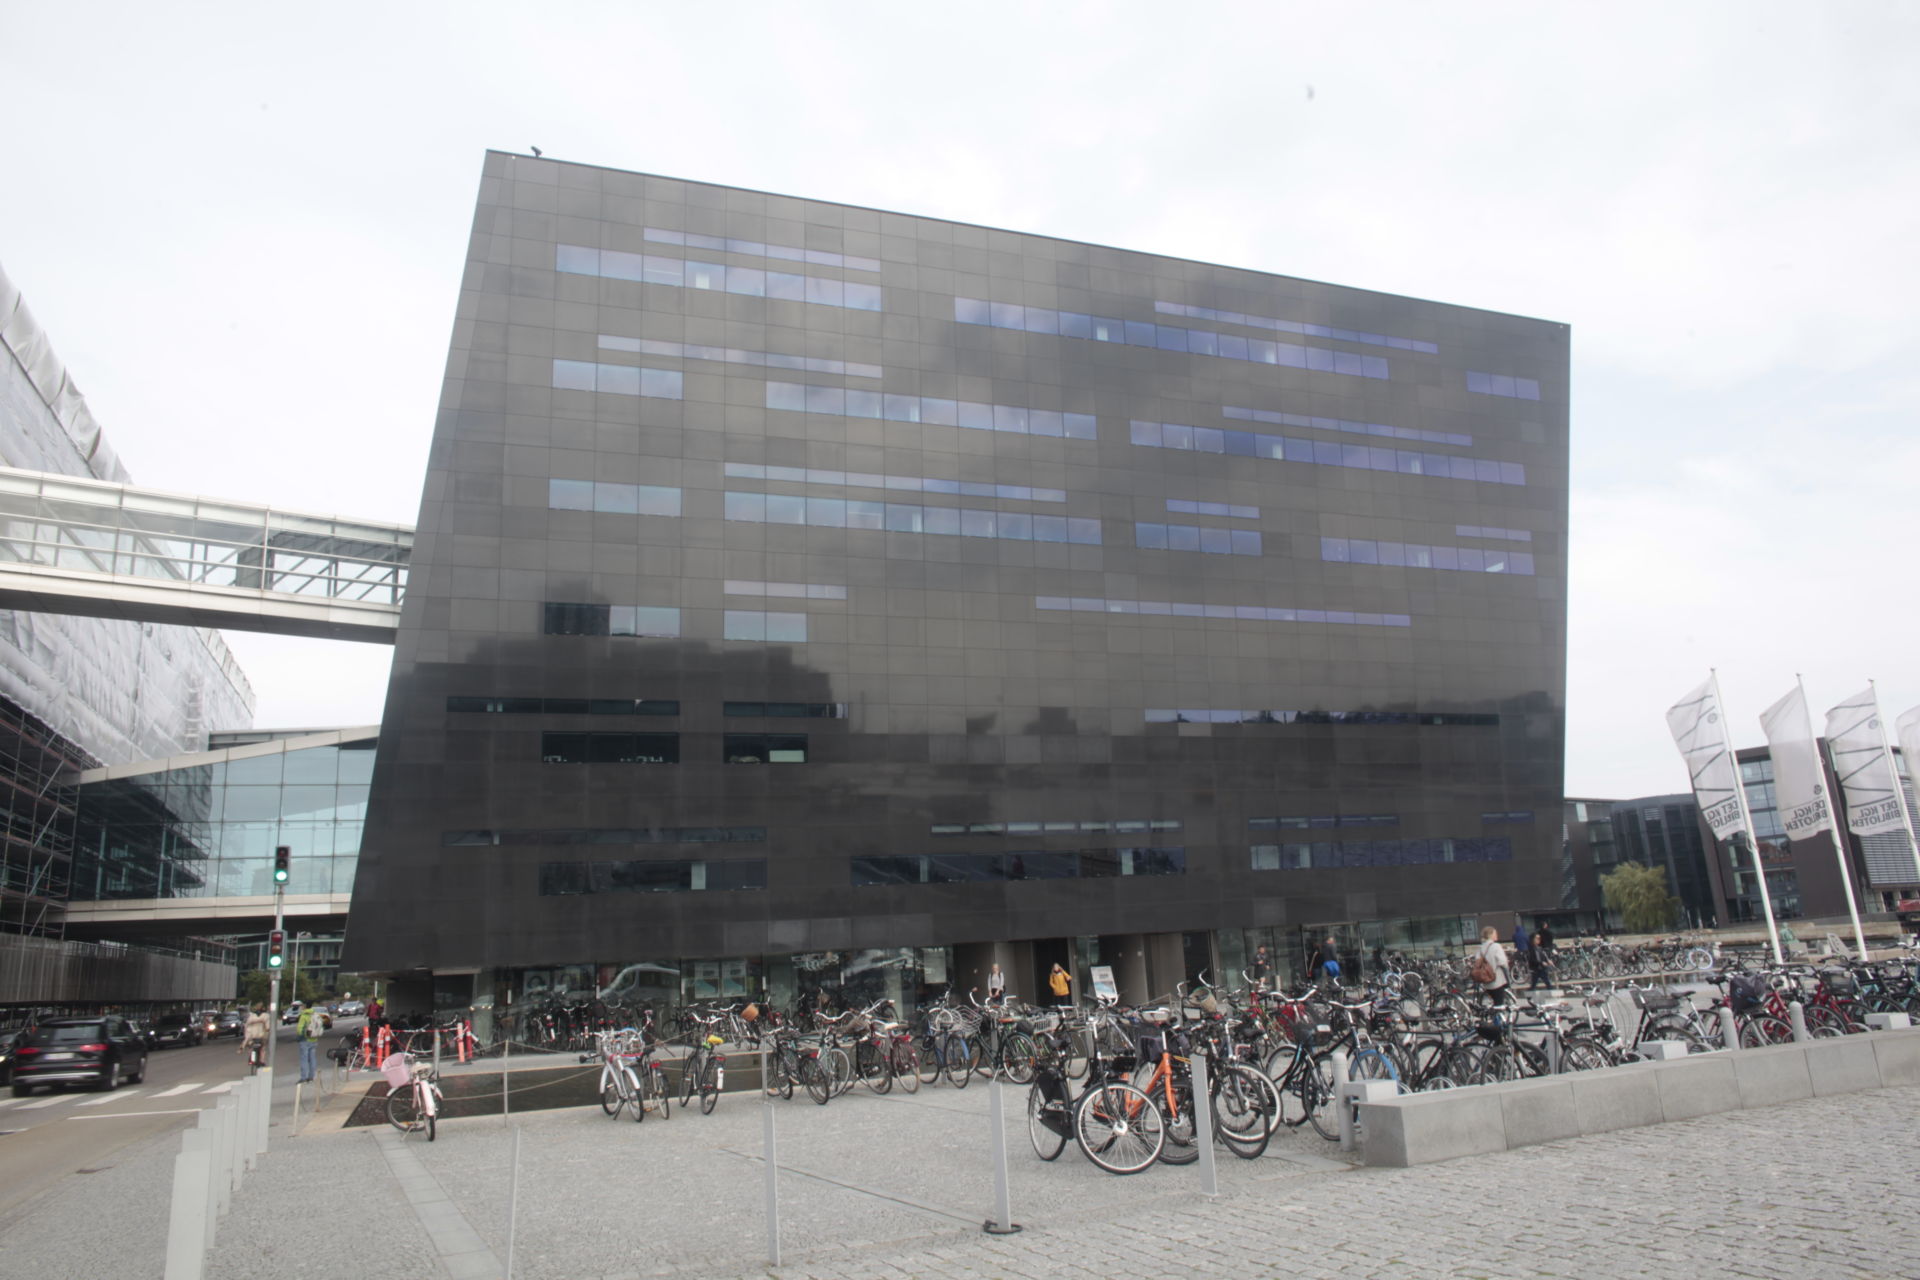 デンマーク王立図書館 ブラック ダイアモンド の建築から知る 学び場 の考え方とデザイン Casa